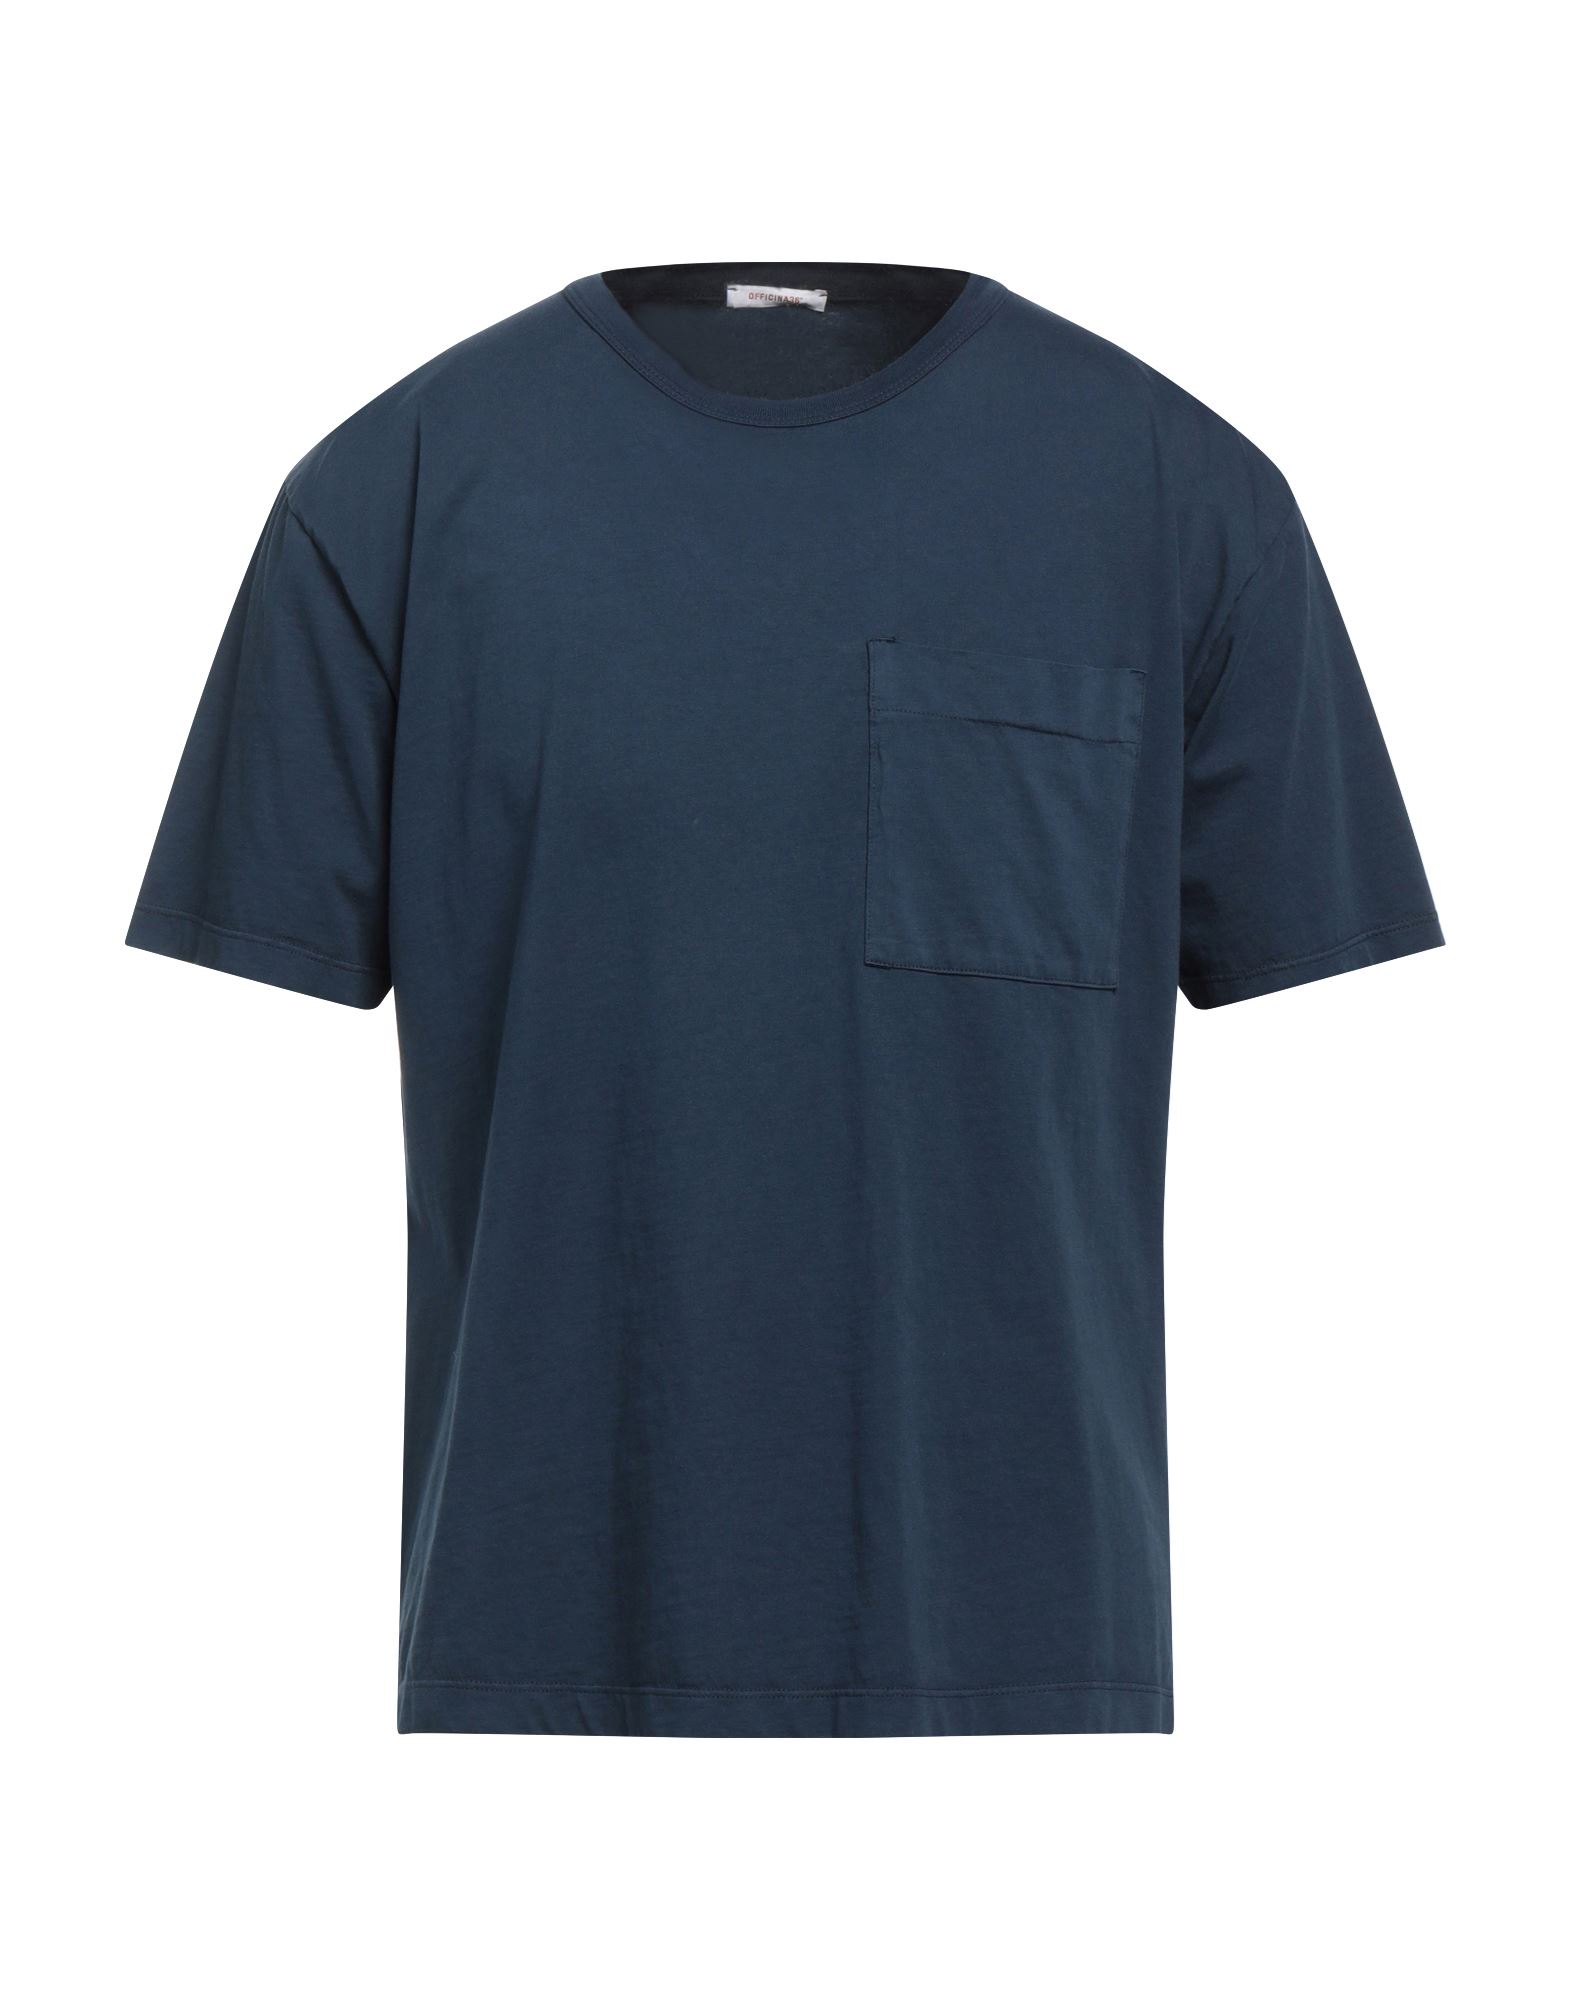 OFFICINA 36 T-shirts Herren Nachtblau von OFFICINA 36